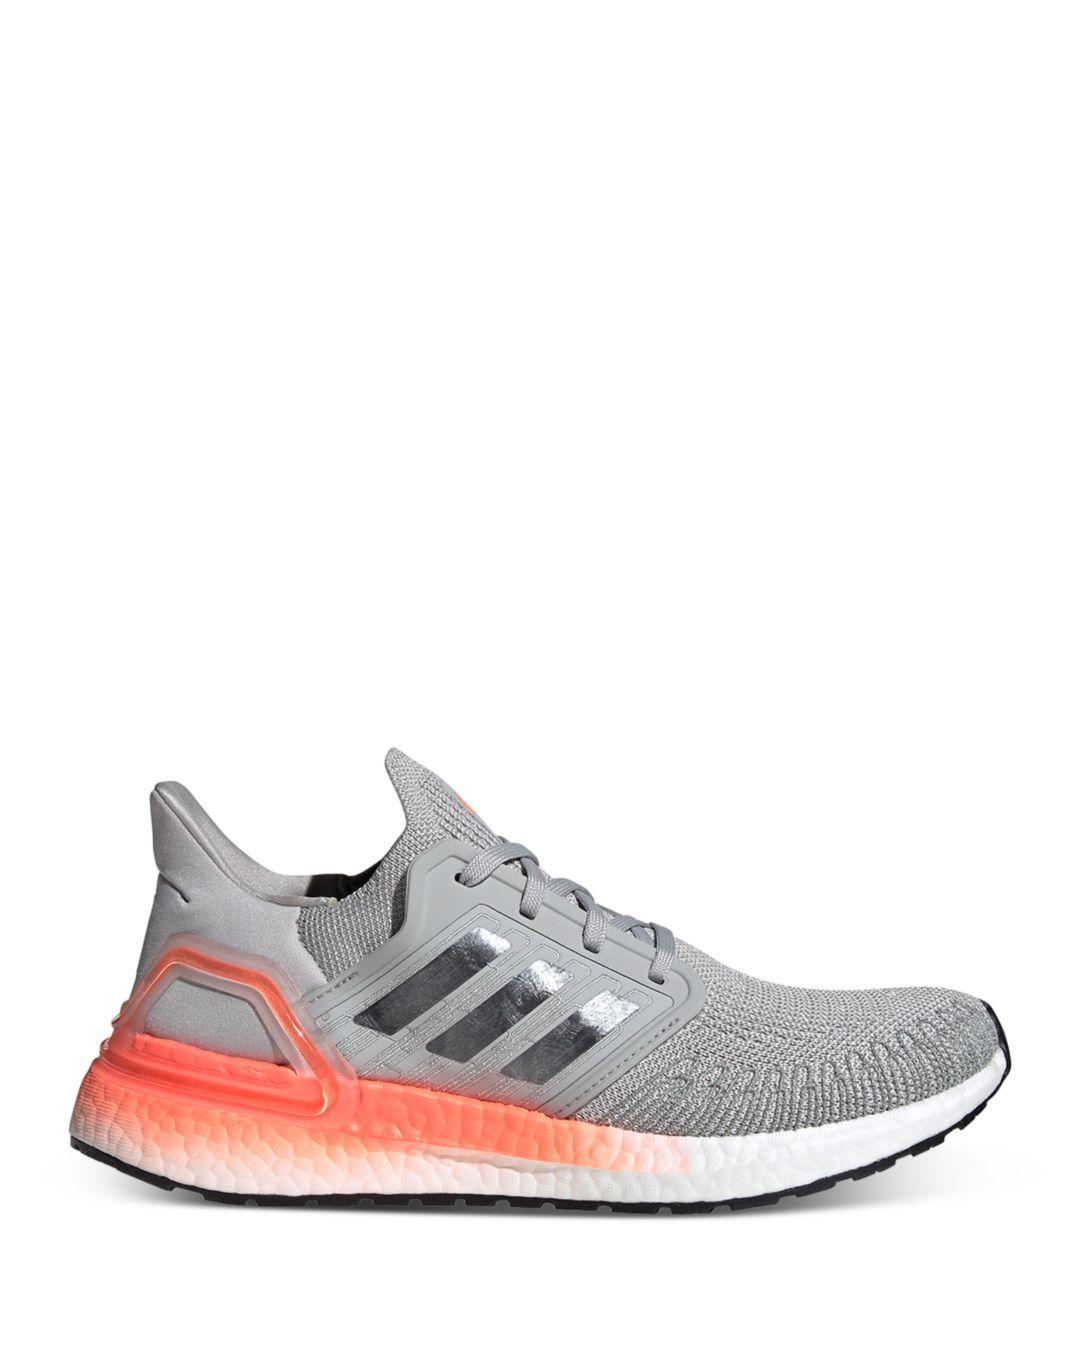 adidas Women's Ultraboost 20 Lace - Up Sneakers in Grey/Orange (Gray) | Lyst